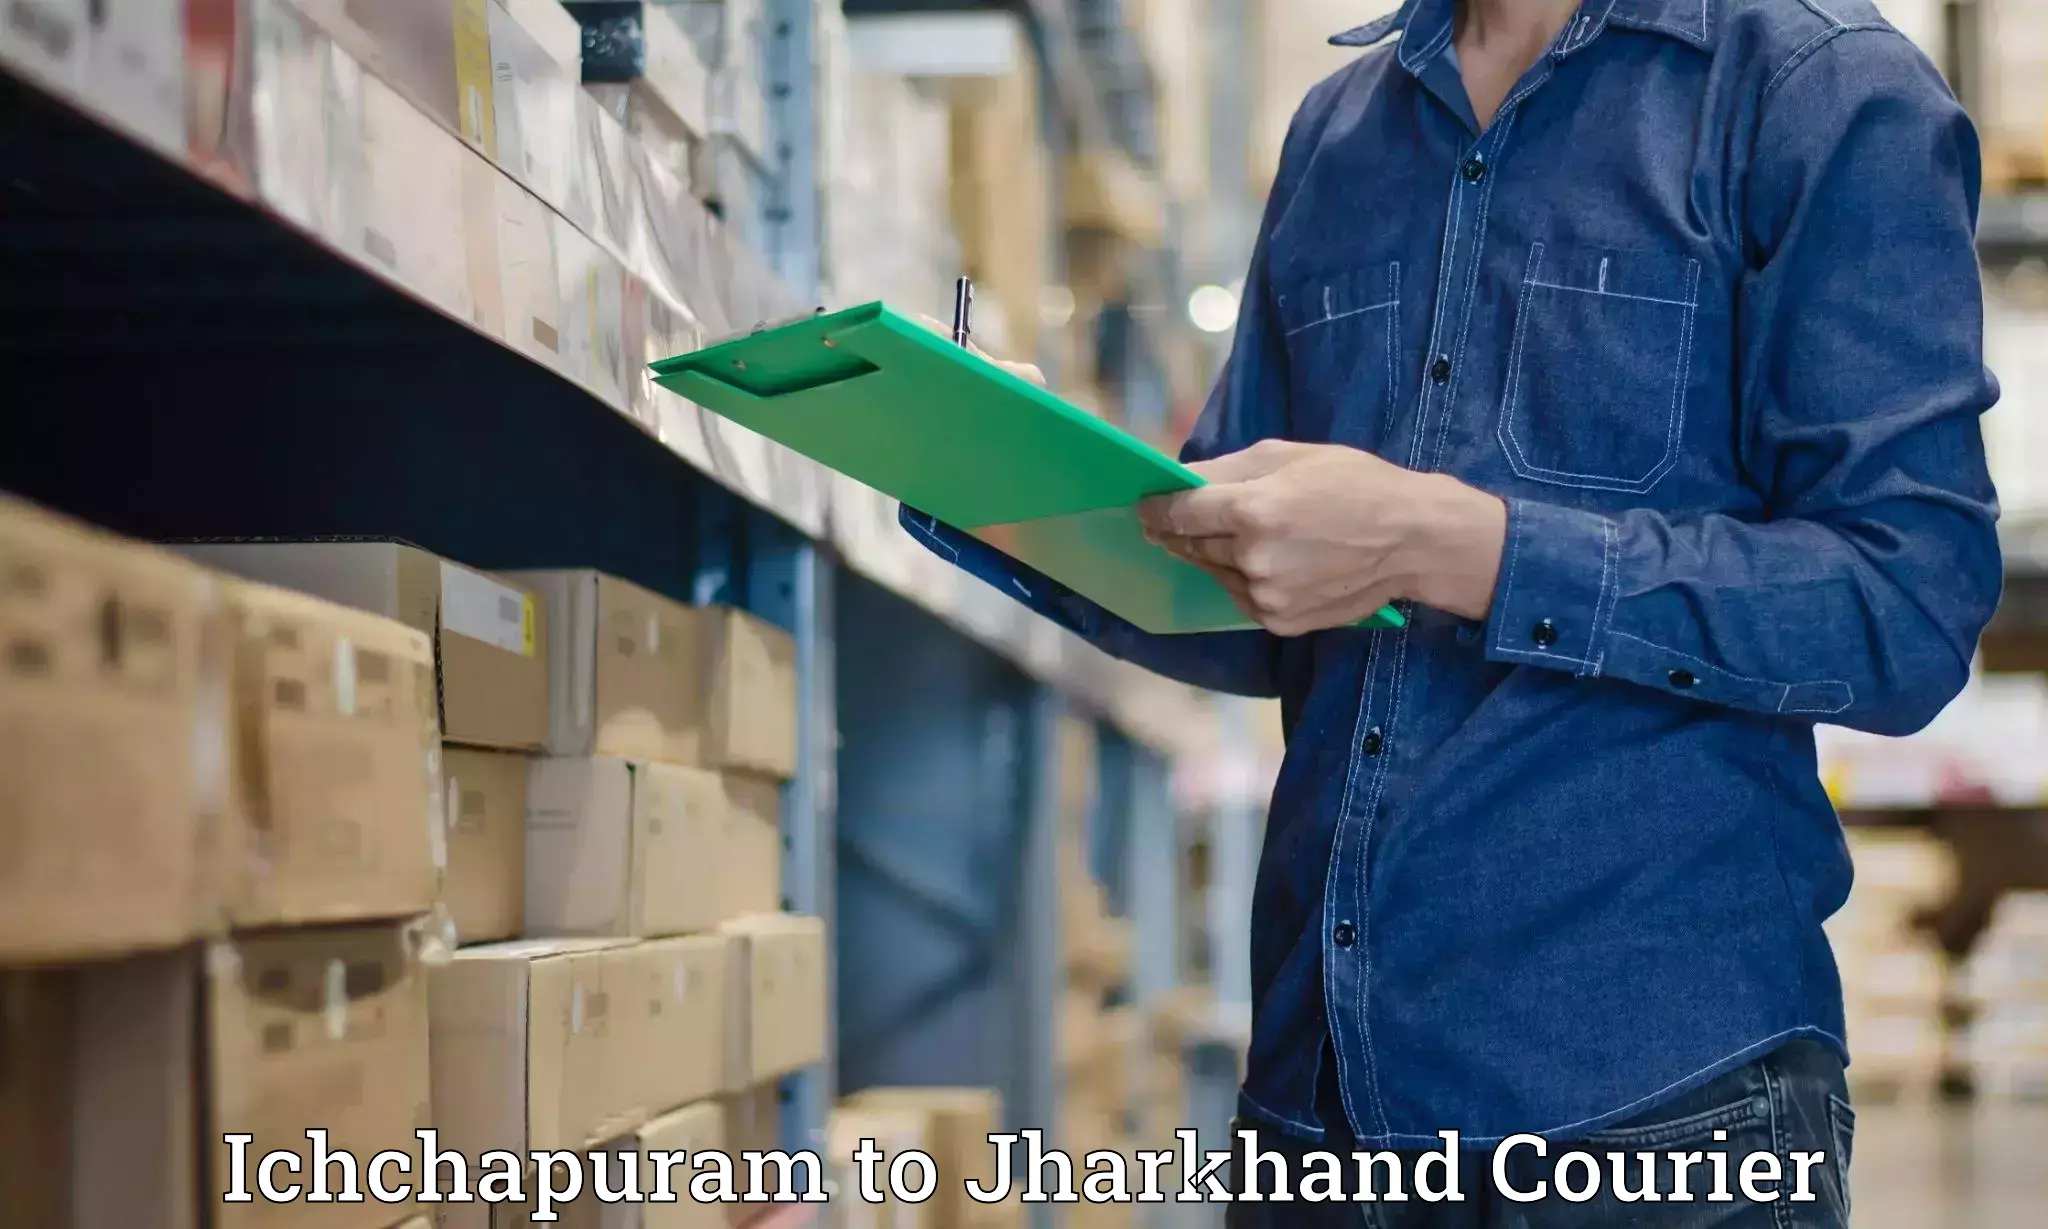 Customer-oriented courier services Ichchapuram to Jharkhand